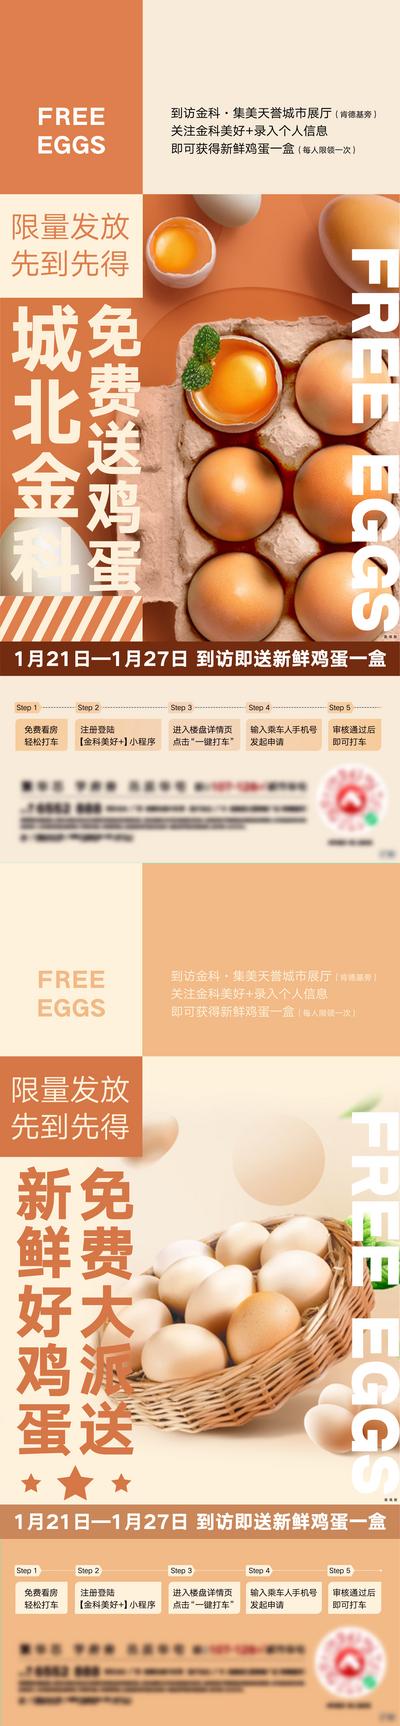 南门网 海报 地产 暖场活动 到访 送鸡蛋 创意 价值点 系列